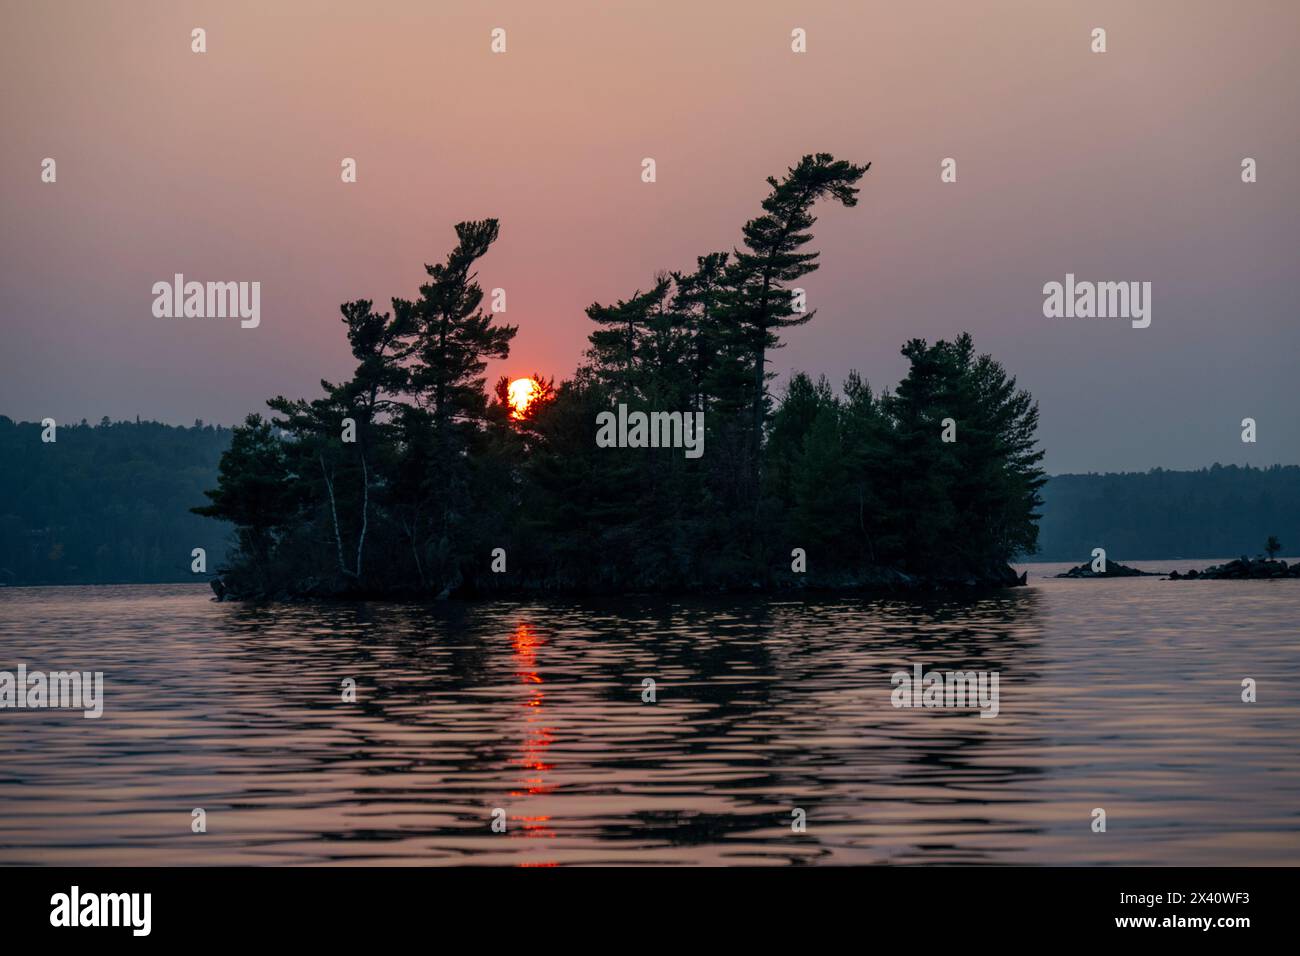 Le soleil coule derrière des arbres silhouettés et un lac ; Lac des bois, Ontario, Canada Banque D'Images